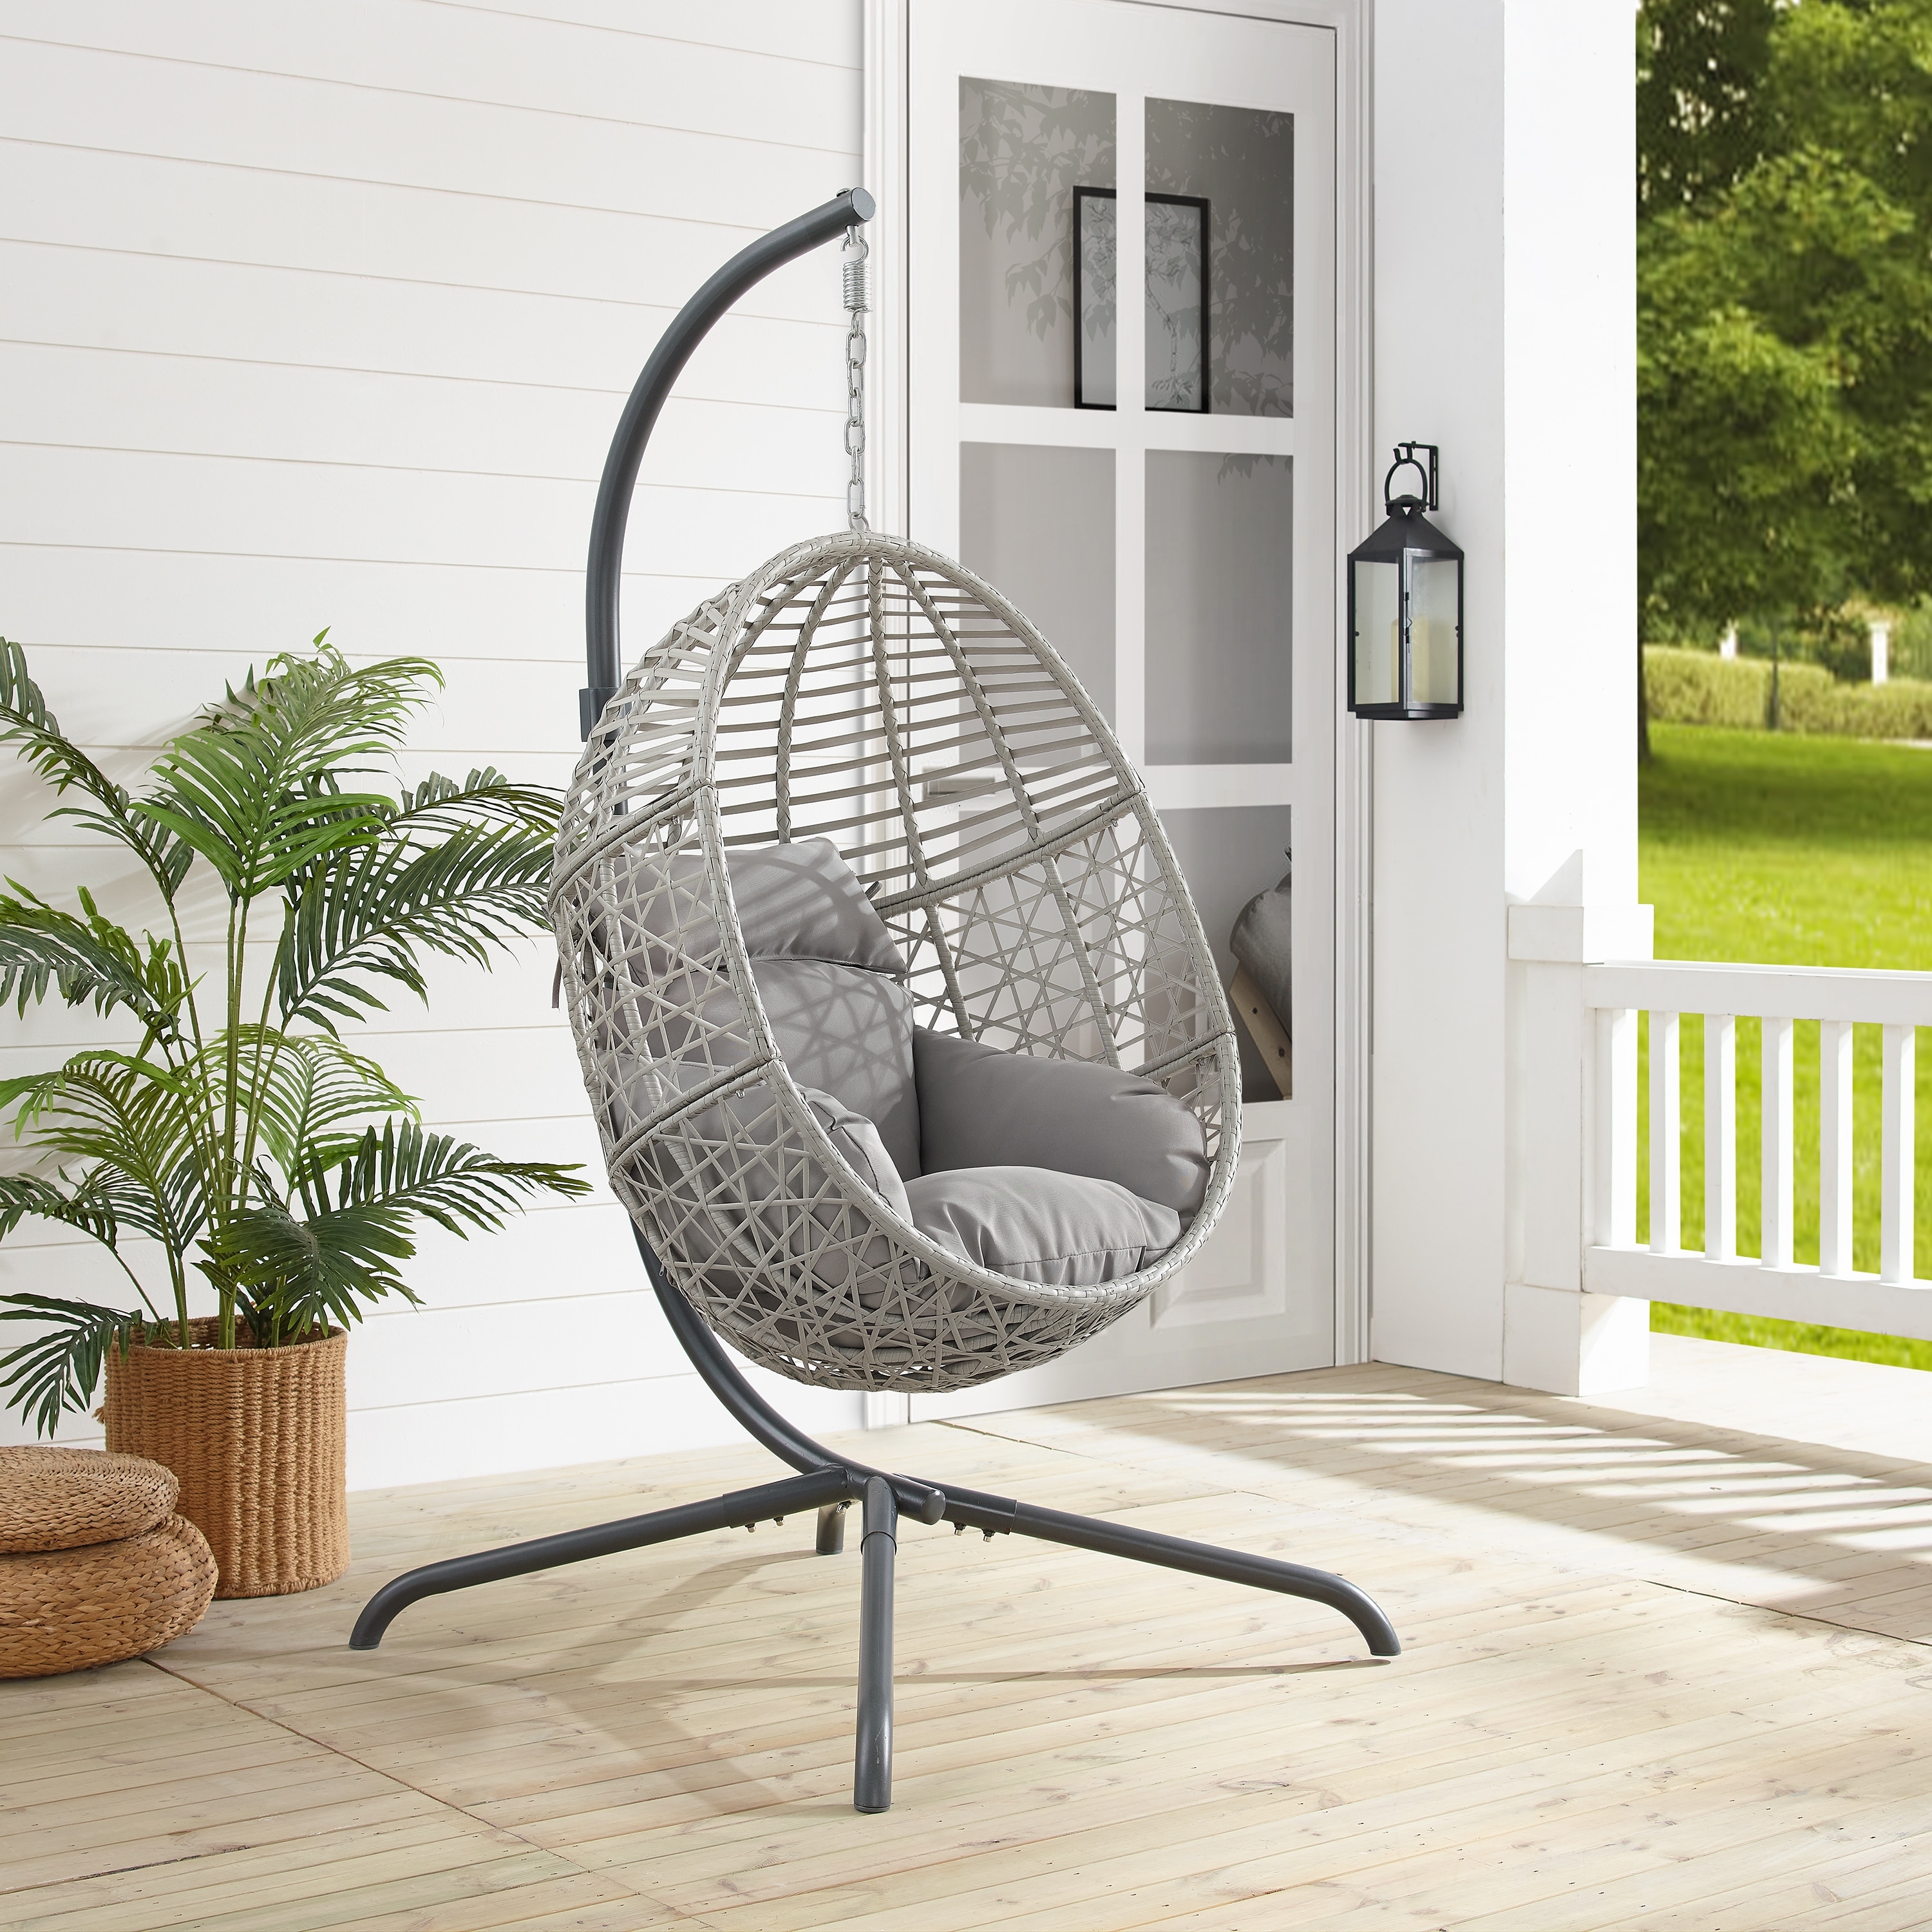 Crosley Furniture Lorelei Indoor/Outdoor Wicker Hanging Egg Chair - 57.13 inchx57.13 inchx76.75 inch